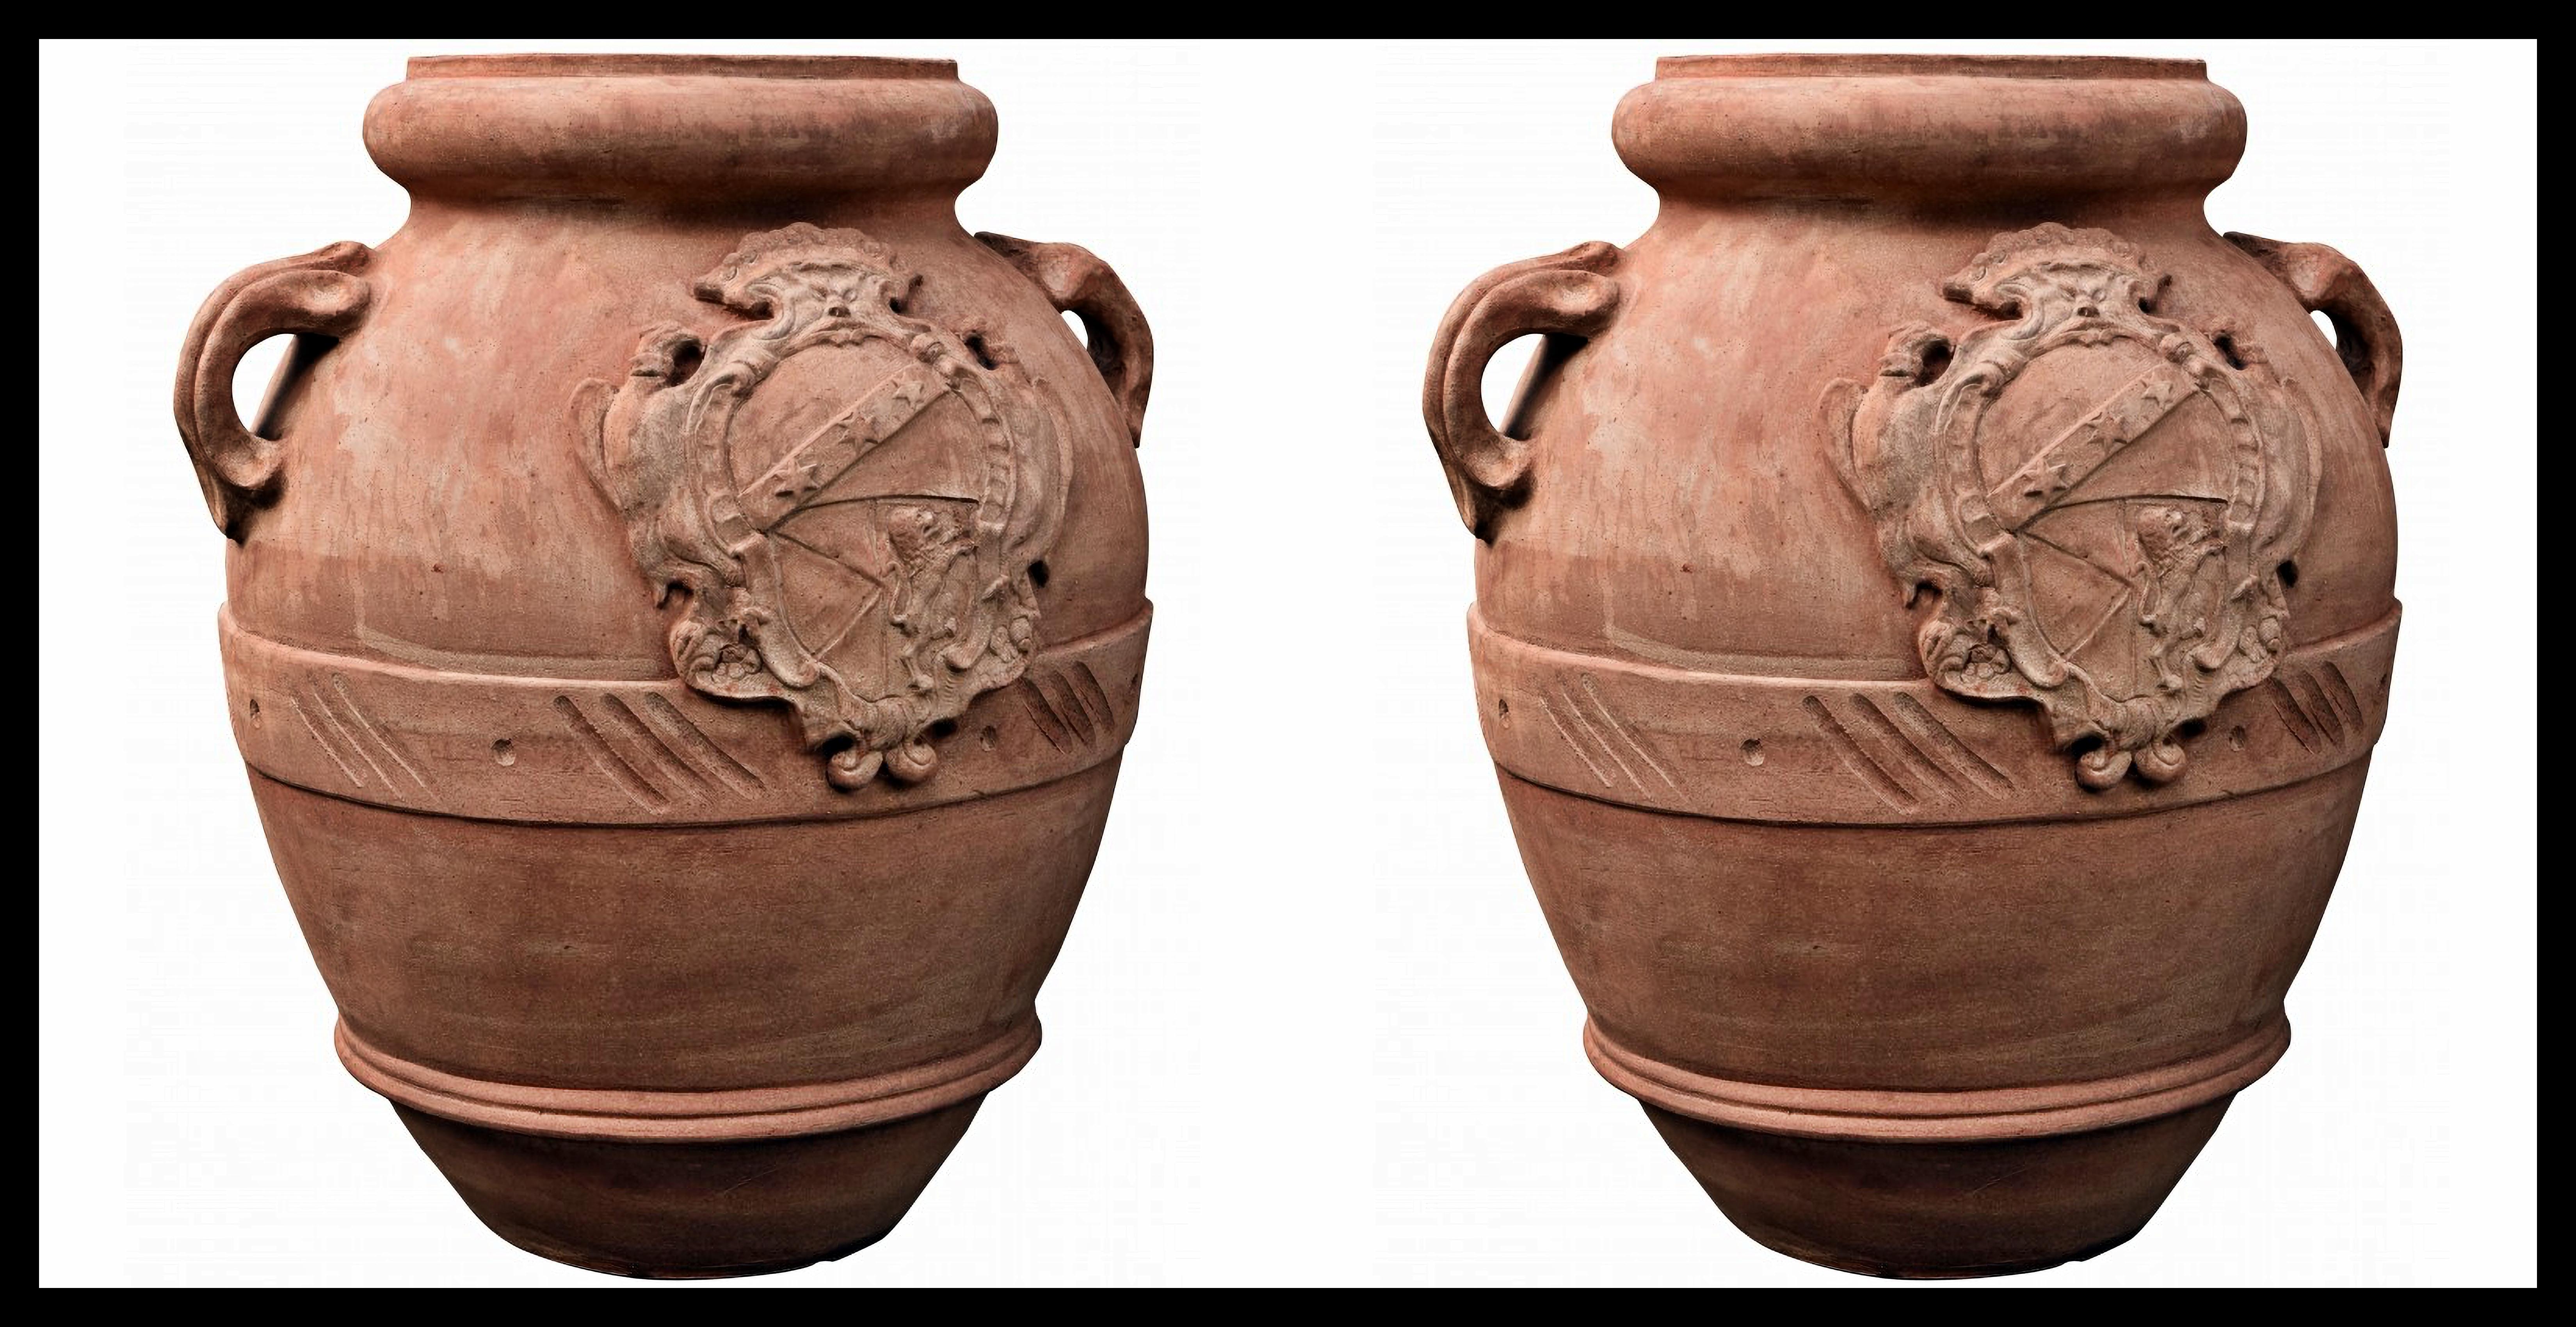 PAIR OF TUSCAN OIL JARS H.70CM MIT GINORI COAT OF ARMS TERRACOTTA 20. Jahrhundert

Typische toskanische Vase, kleiner und hochwertiger Ölbehälter.
Originalgetreue Kopie einer Vase der Familie 